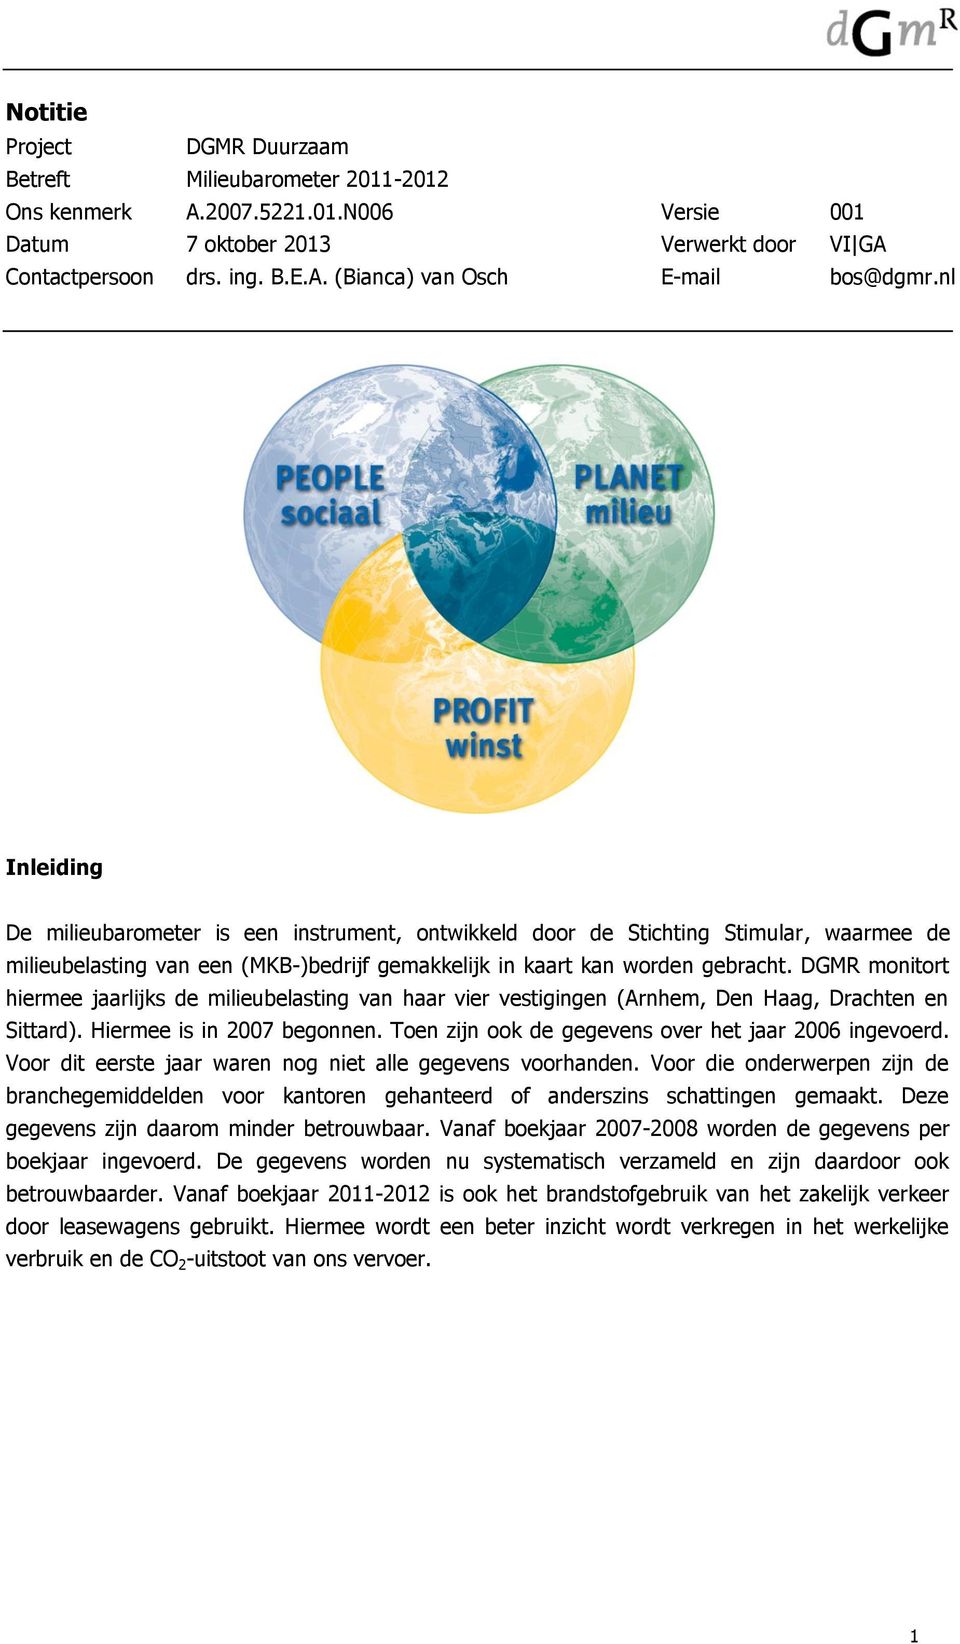 DGMR monitort hiermee jaarlijks de milieubelasting van haar vier vestigingen (Arnhem, Den Haag, Drachten en Sittard). Hiermee is in 2007 begonnen.